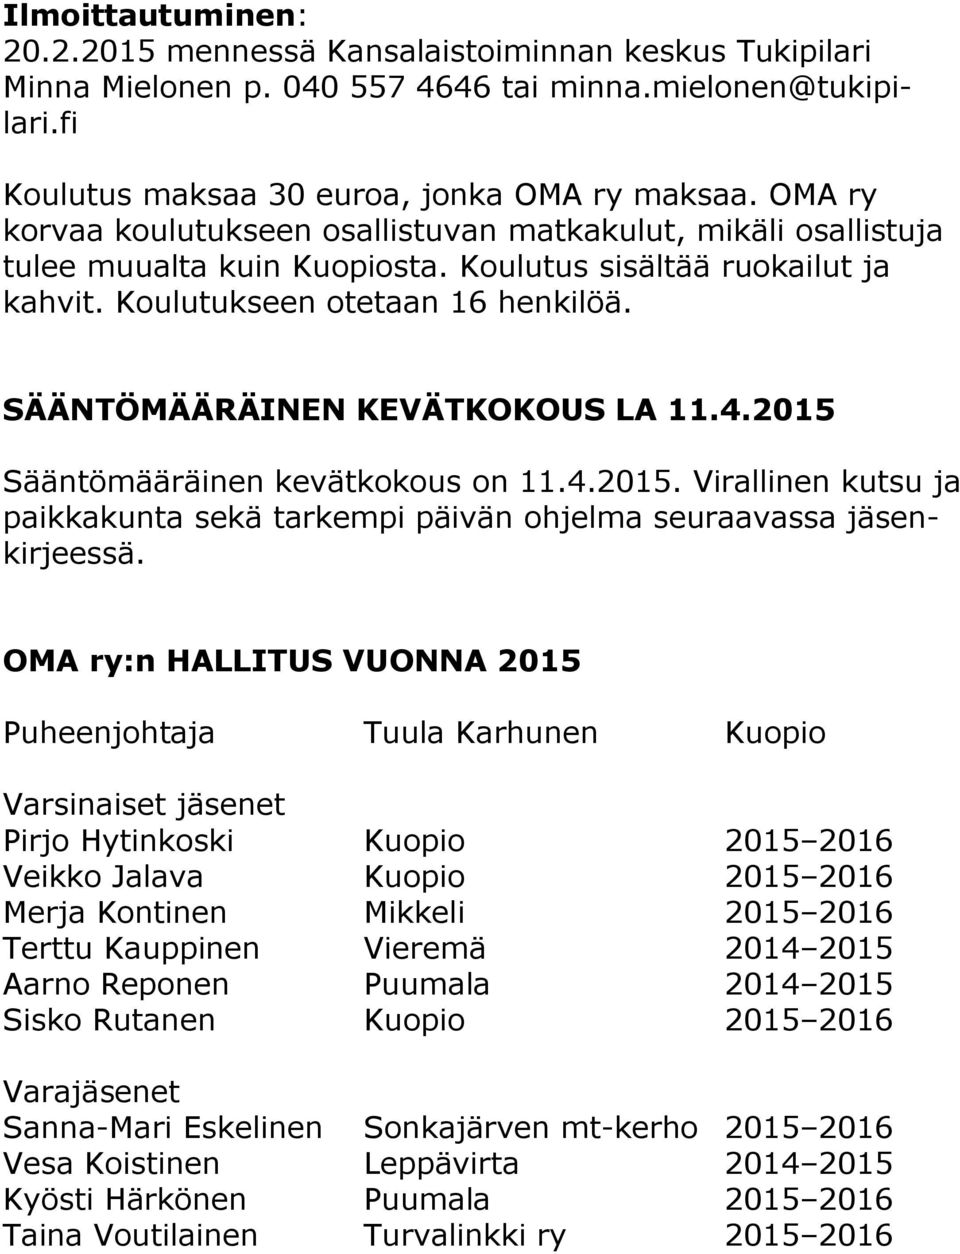 SÄÄNTÖMÄÄRÄINEN KEVÄTKOKOUS LA 11.4.2015 Sääntömääräinen kevätkokous on 11.4.2015. Virallinen kutsu ja paikkakunta sekä tarkempi päivän ohjelma seuraavassa jäsenkirjeessä.